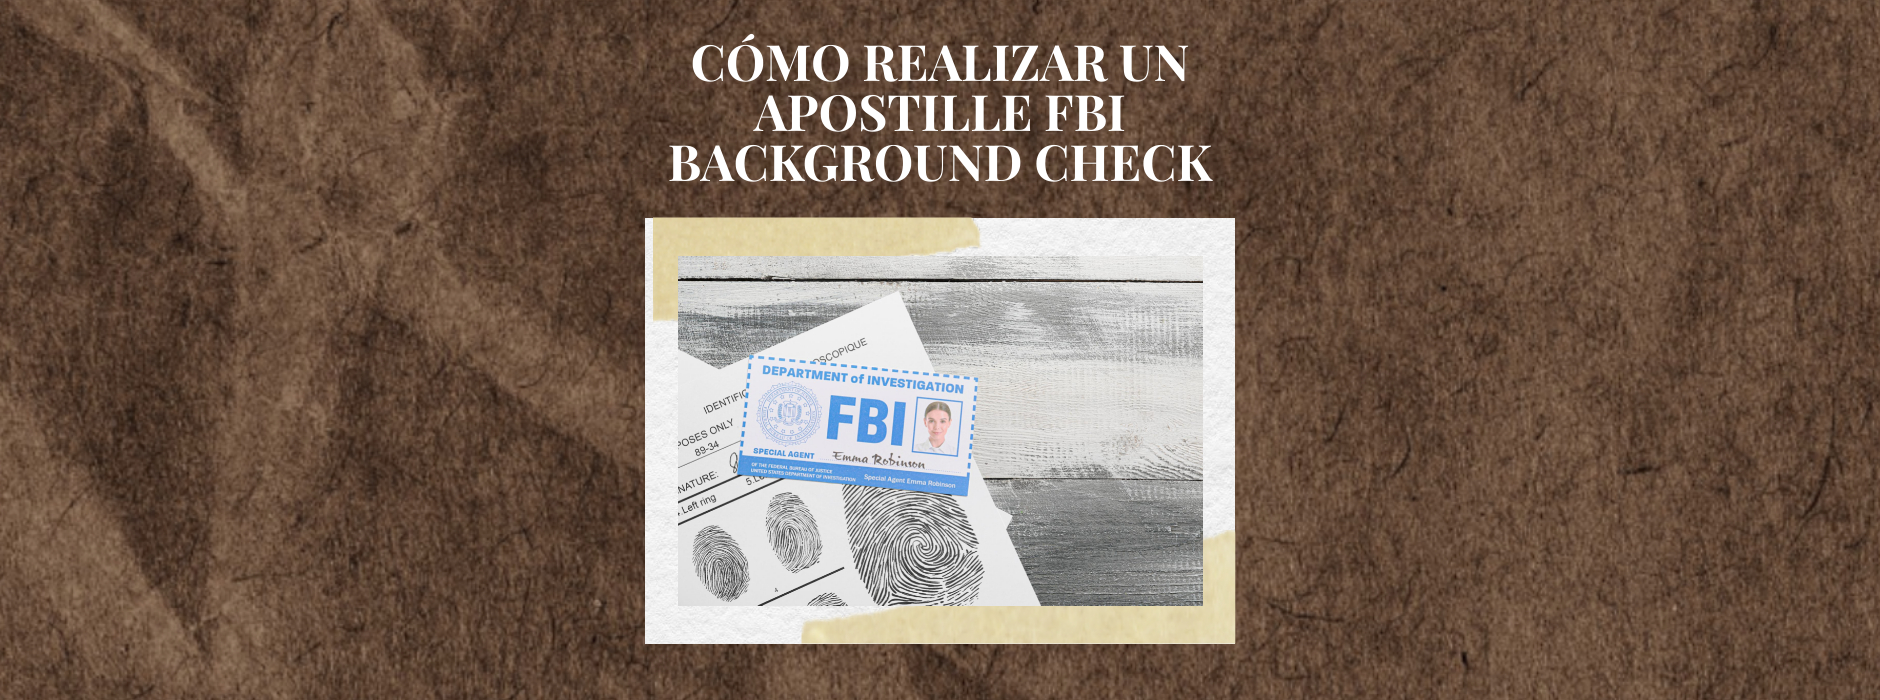 Cómo Realizar un Apostille FBI Background Check